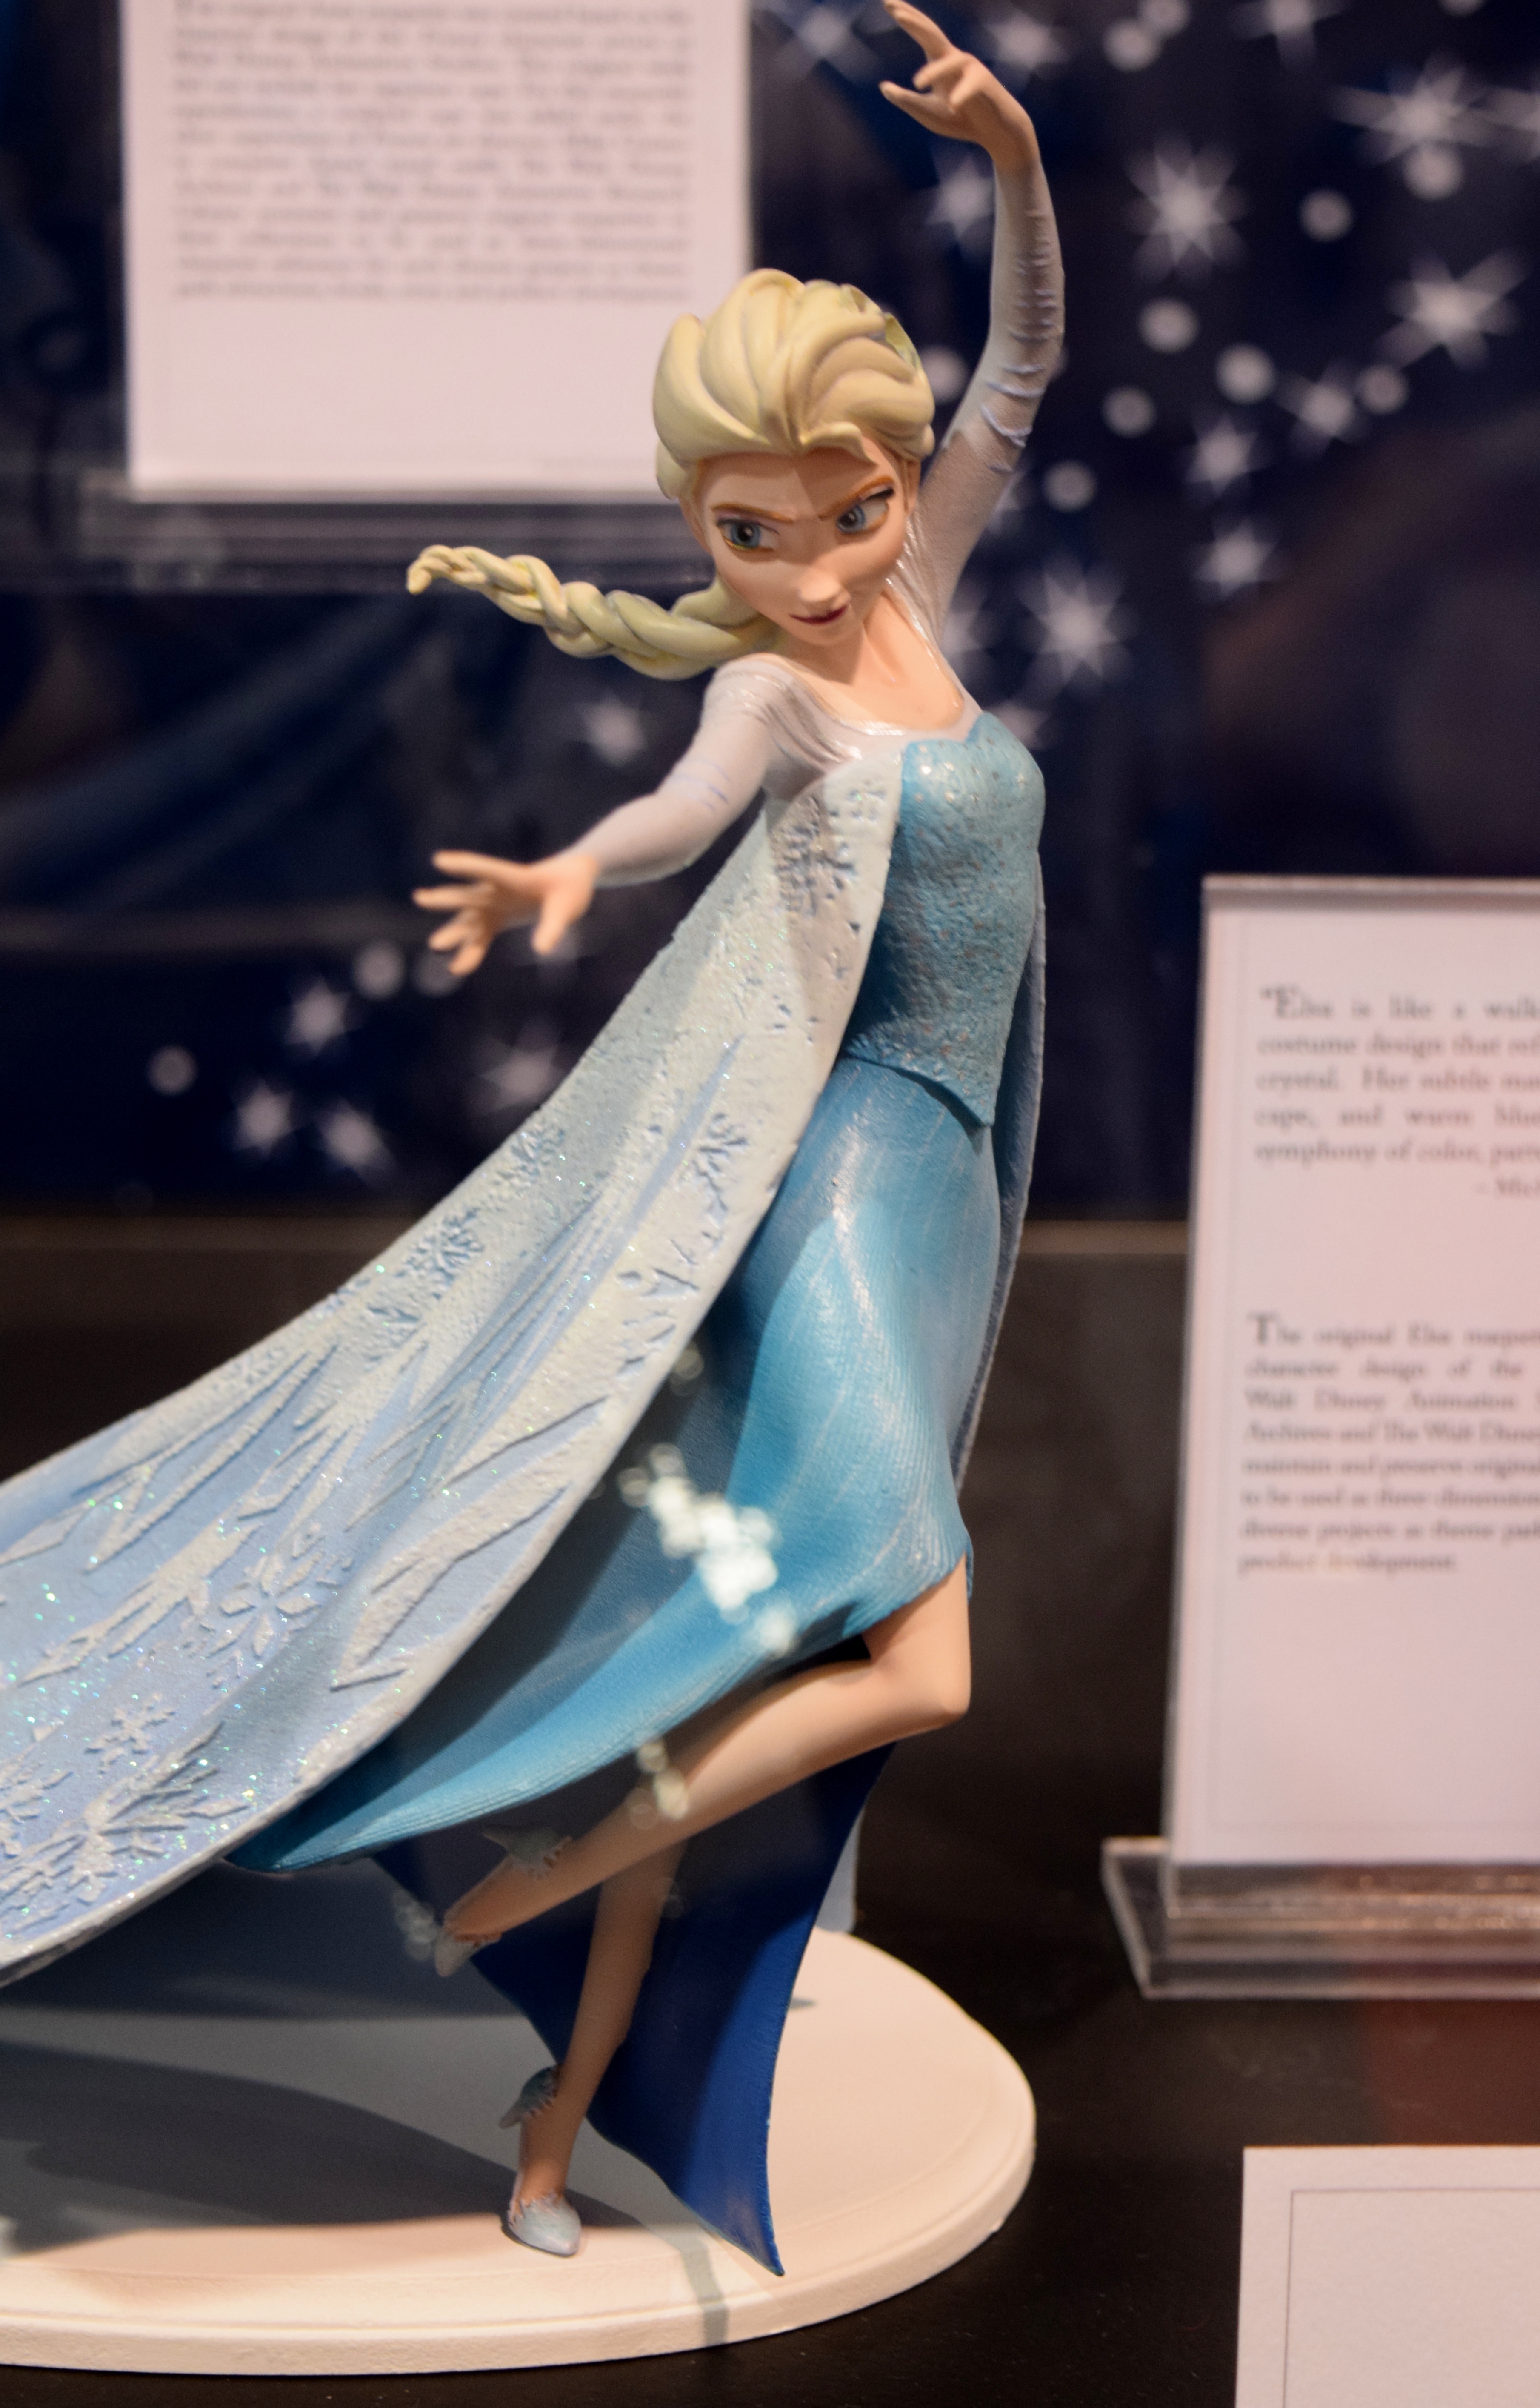 frozen - Figurines des personnages de "Frozen". - Page 4 20507358228_1ebe30b22b_o